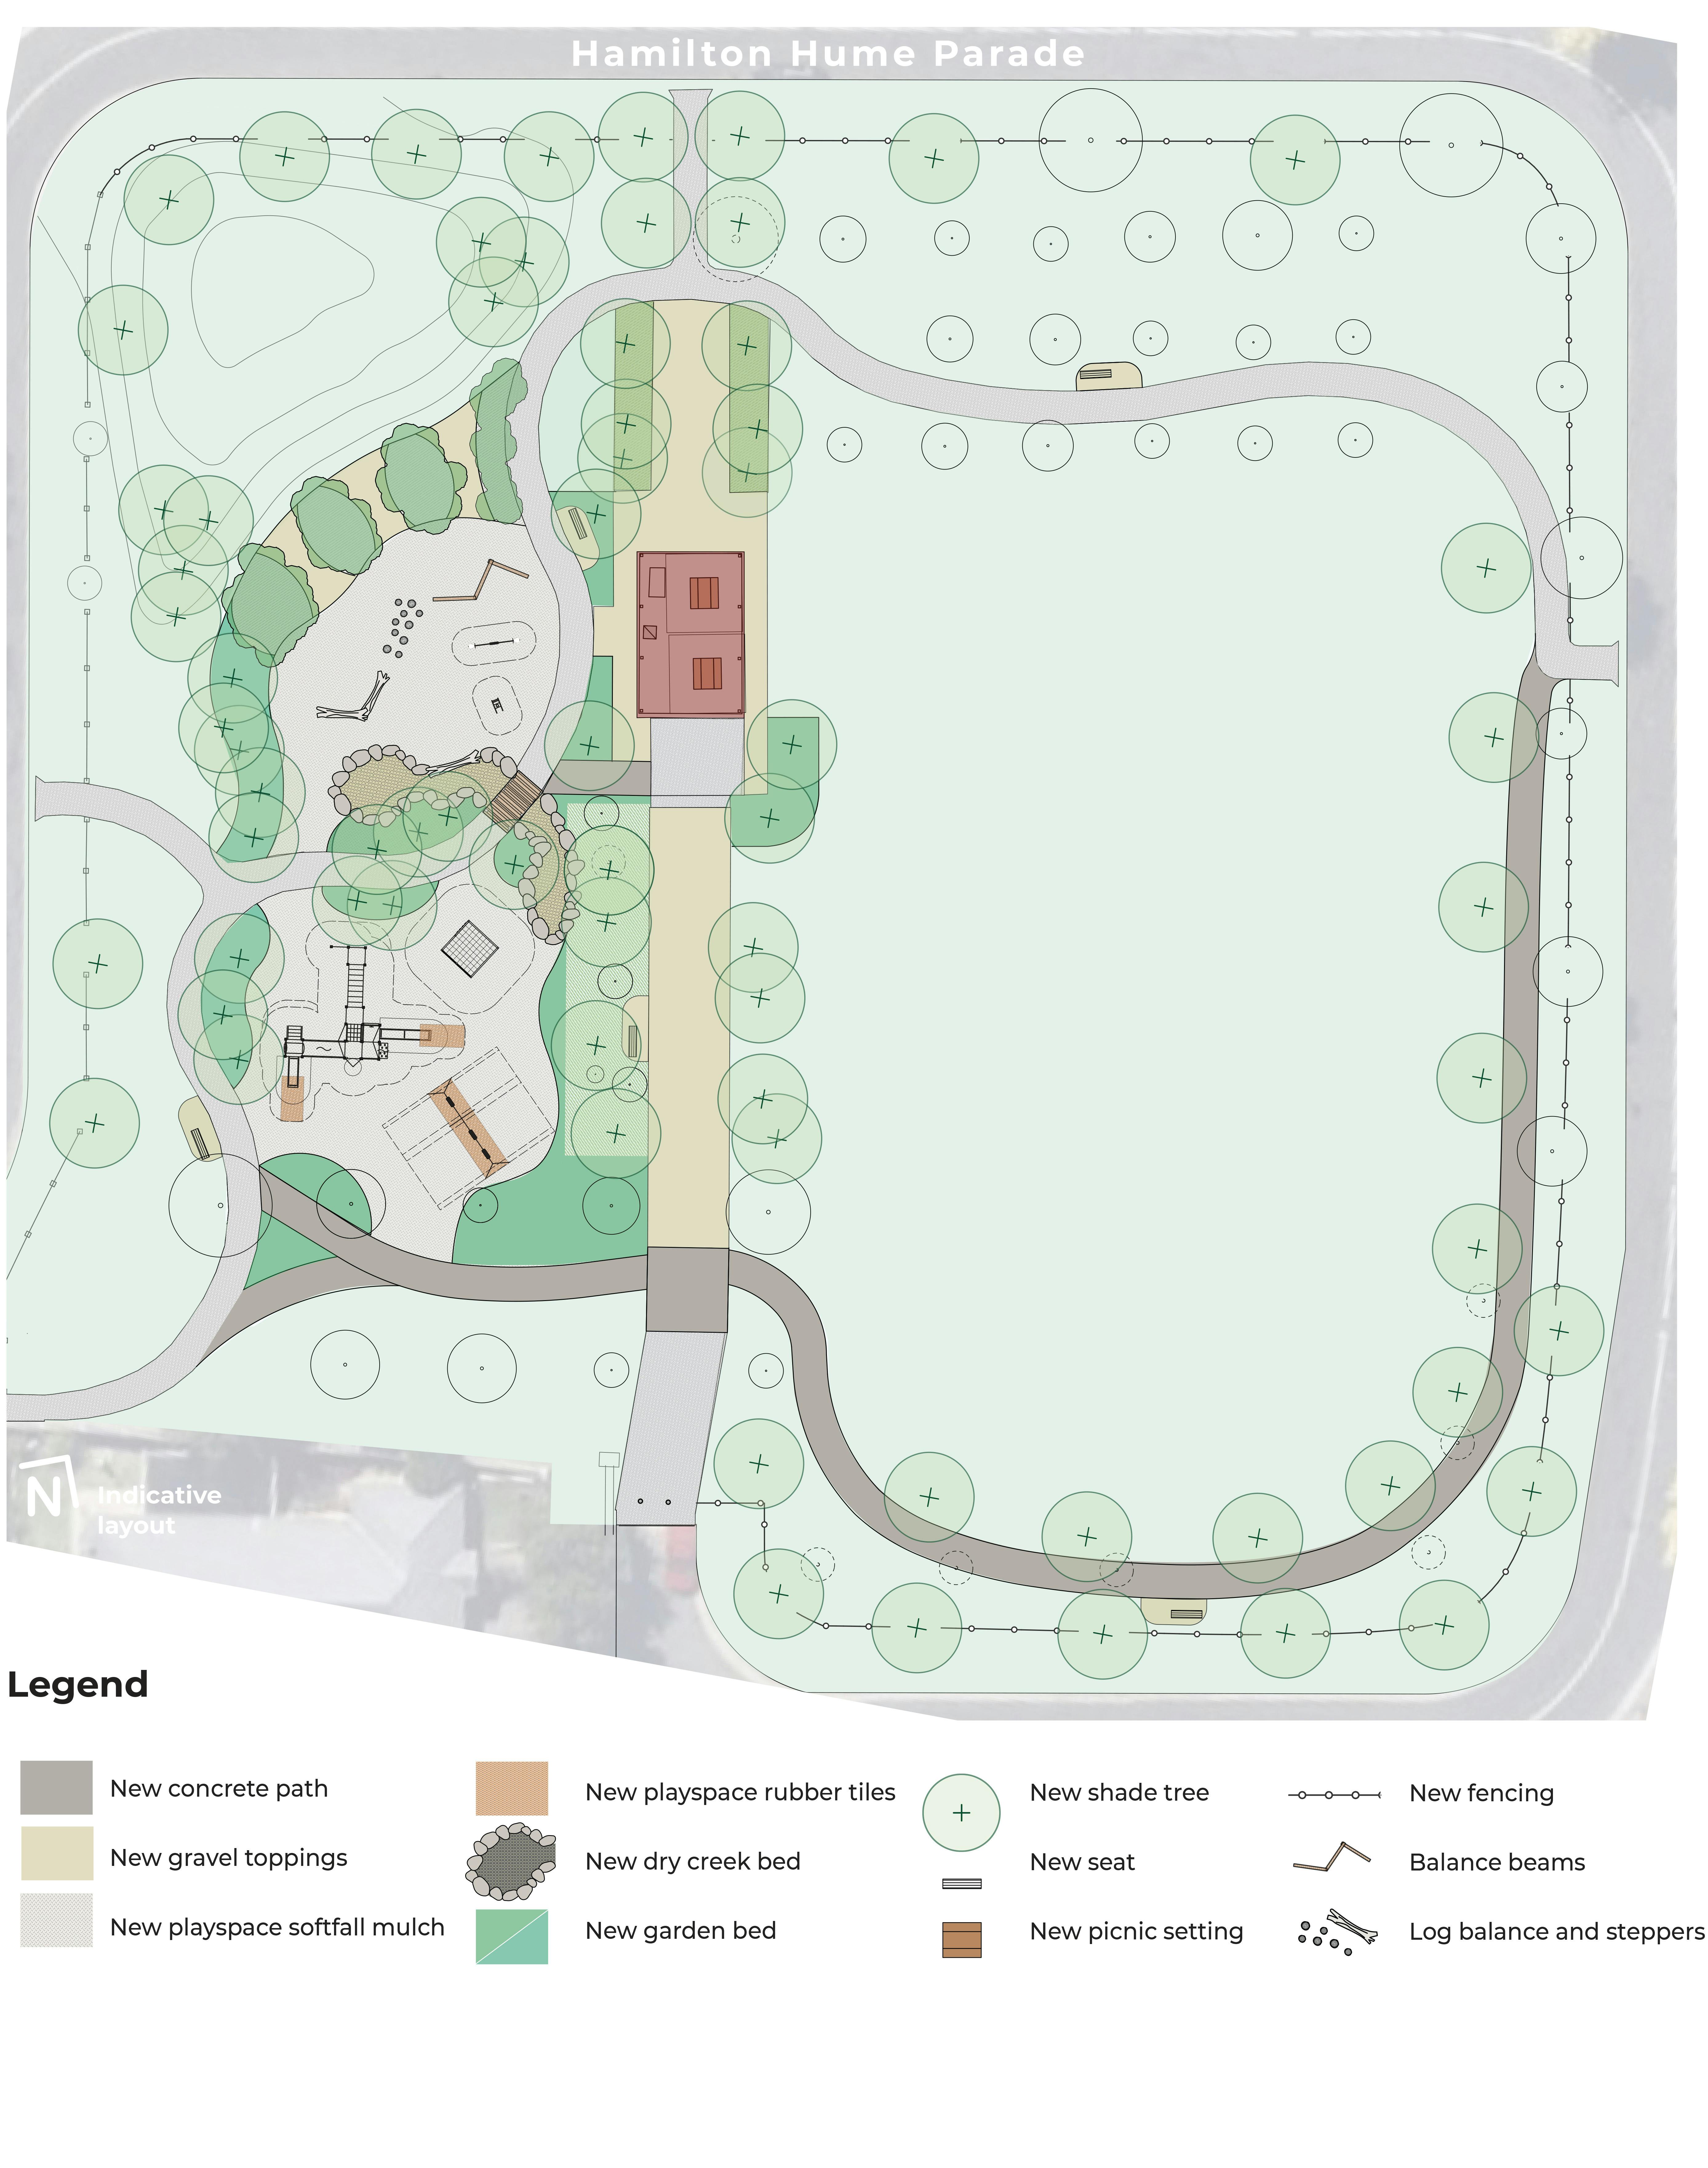 Hamilton Hume Reserve - Play & Landscape Concept Plan